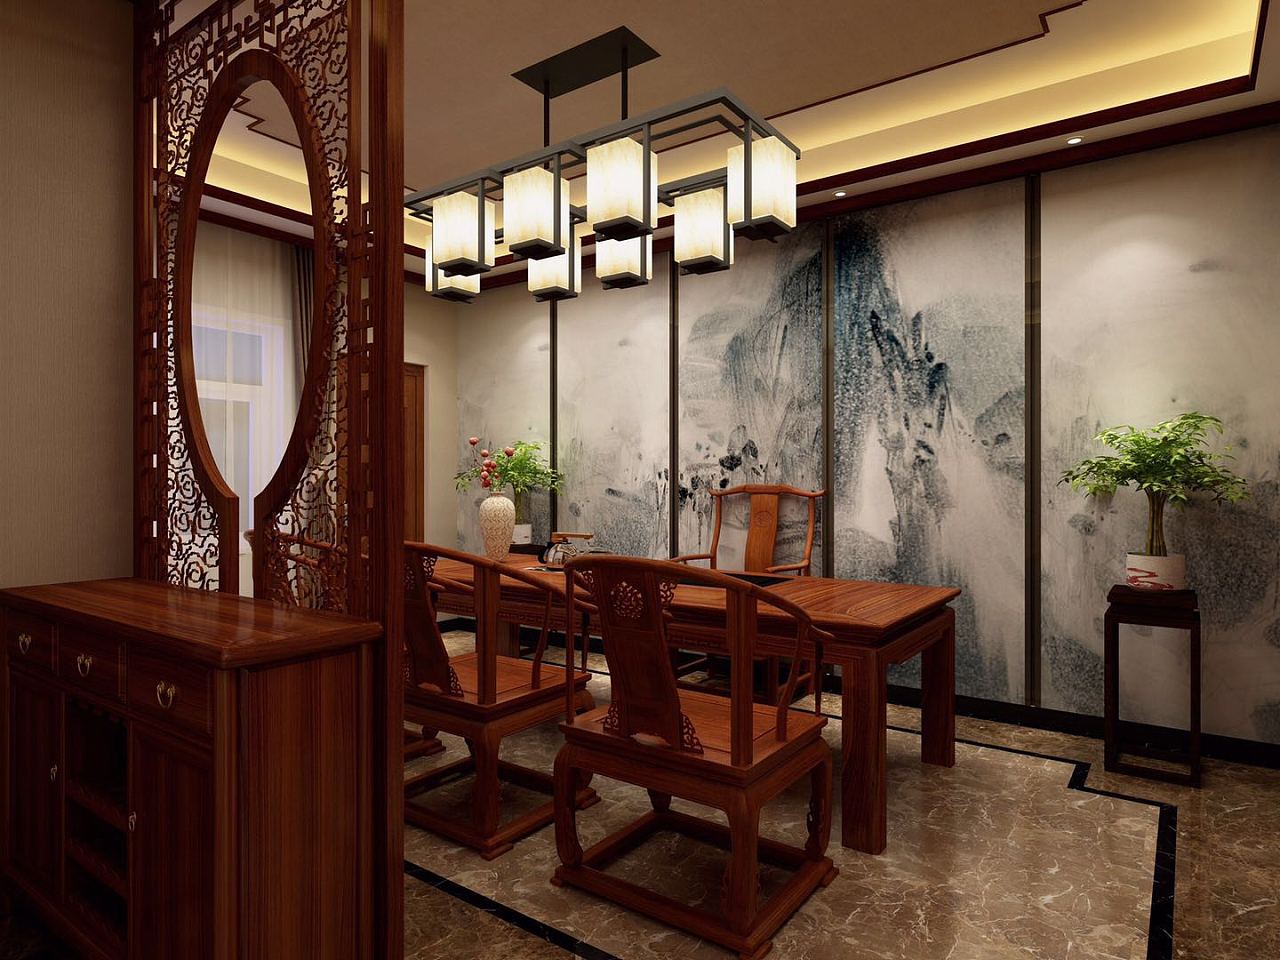 中式客厅古典红木家具装修效果图欣赏 – 设计本装修效果图